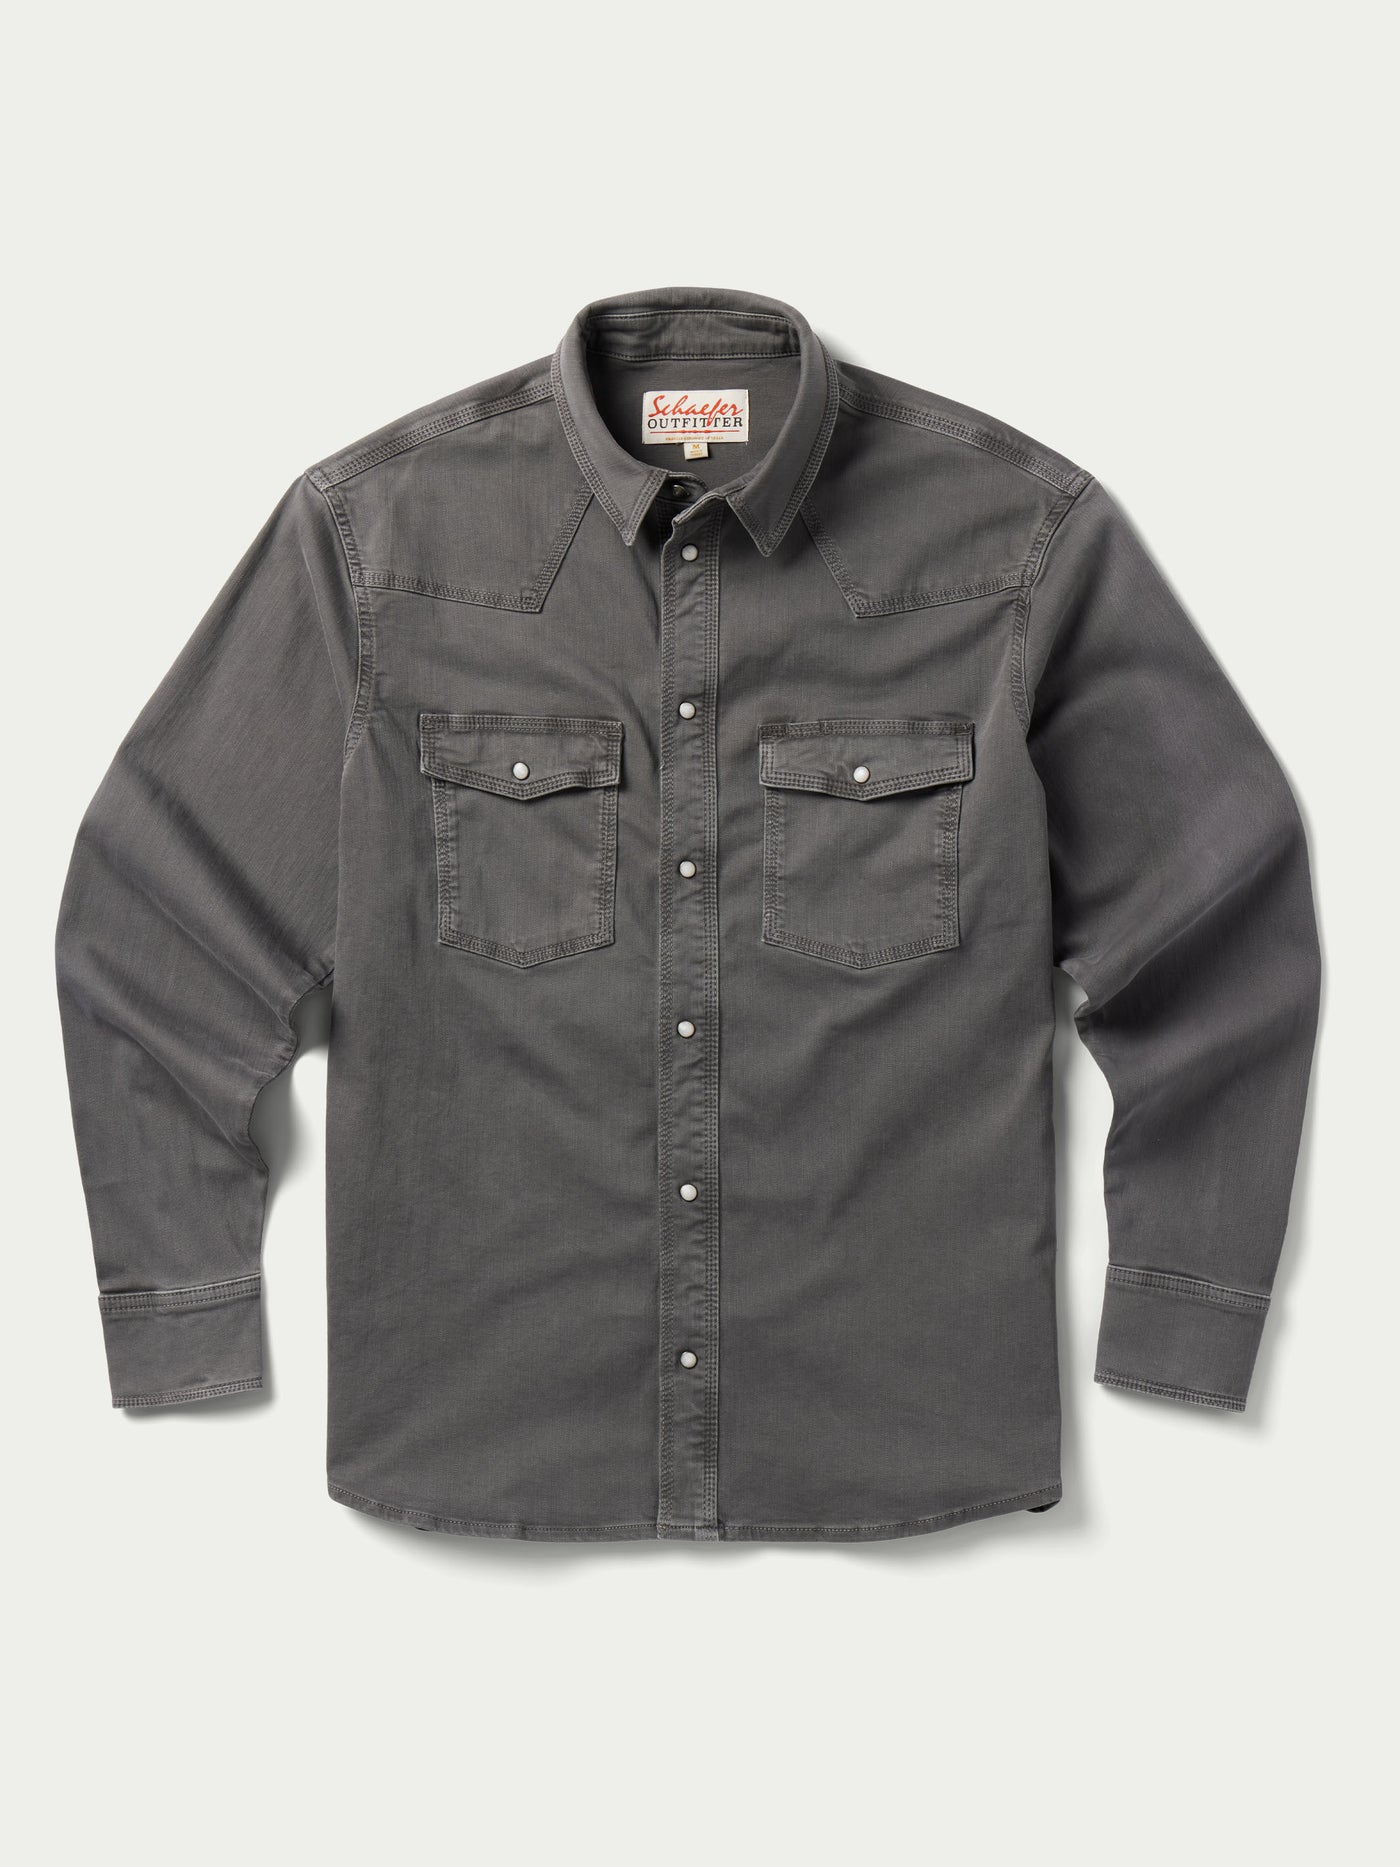 Western Denim Snap Shirt - Schaefer Outfitter